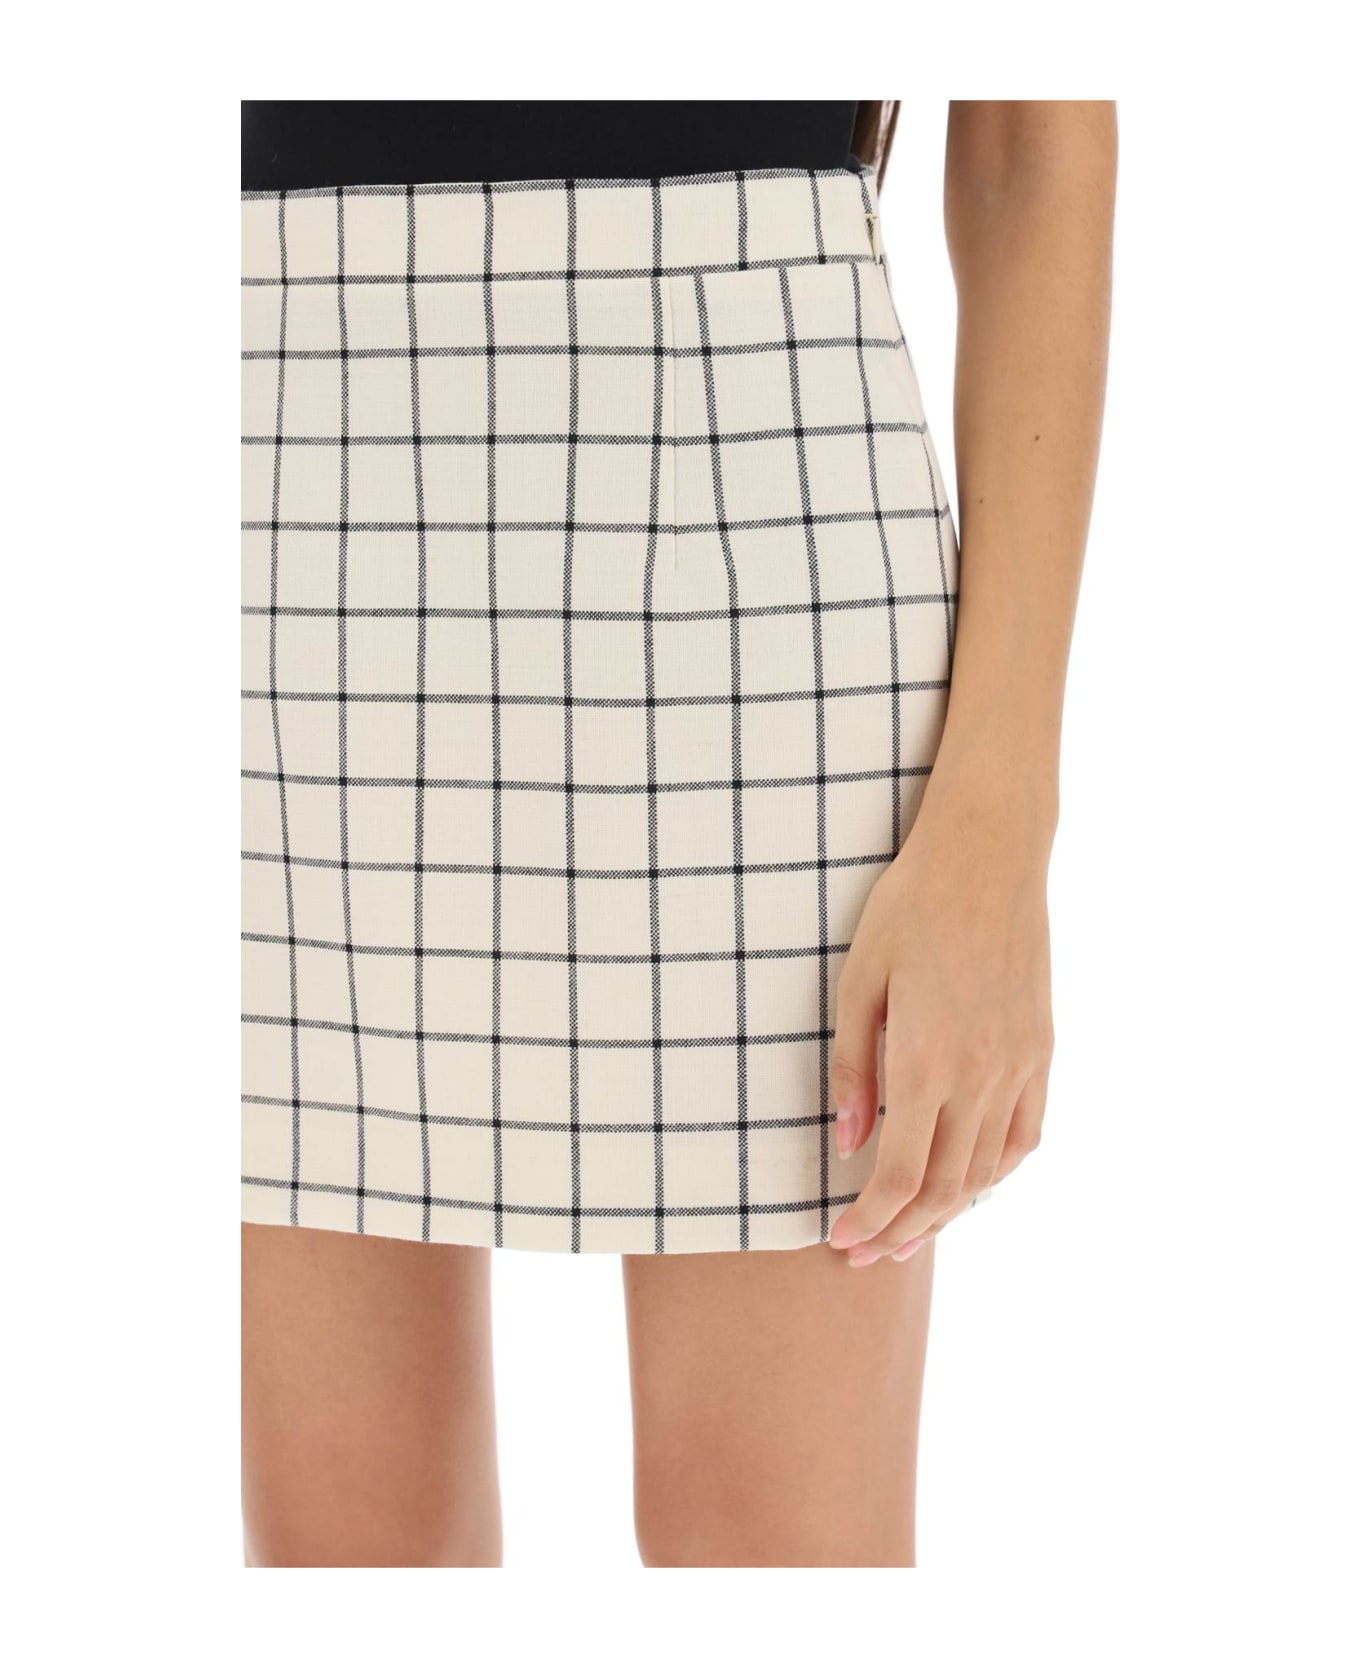 Marni Check Wool Mini Skirt - STONE WHITE (White) スカート